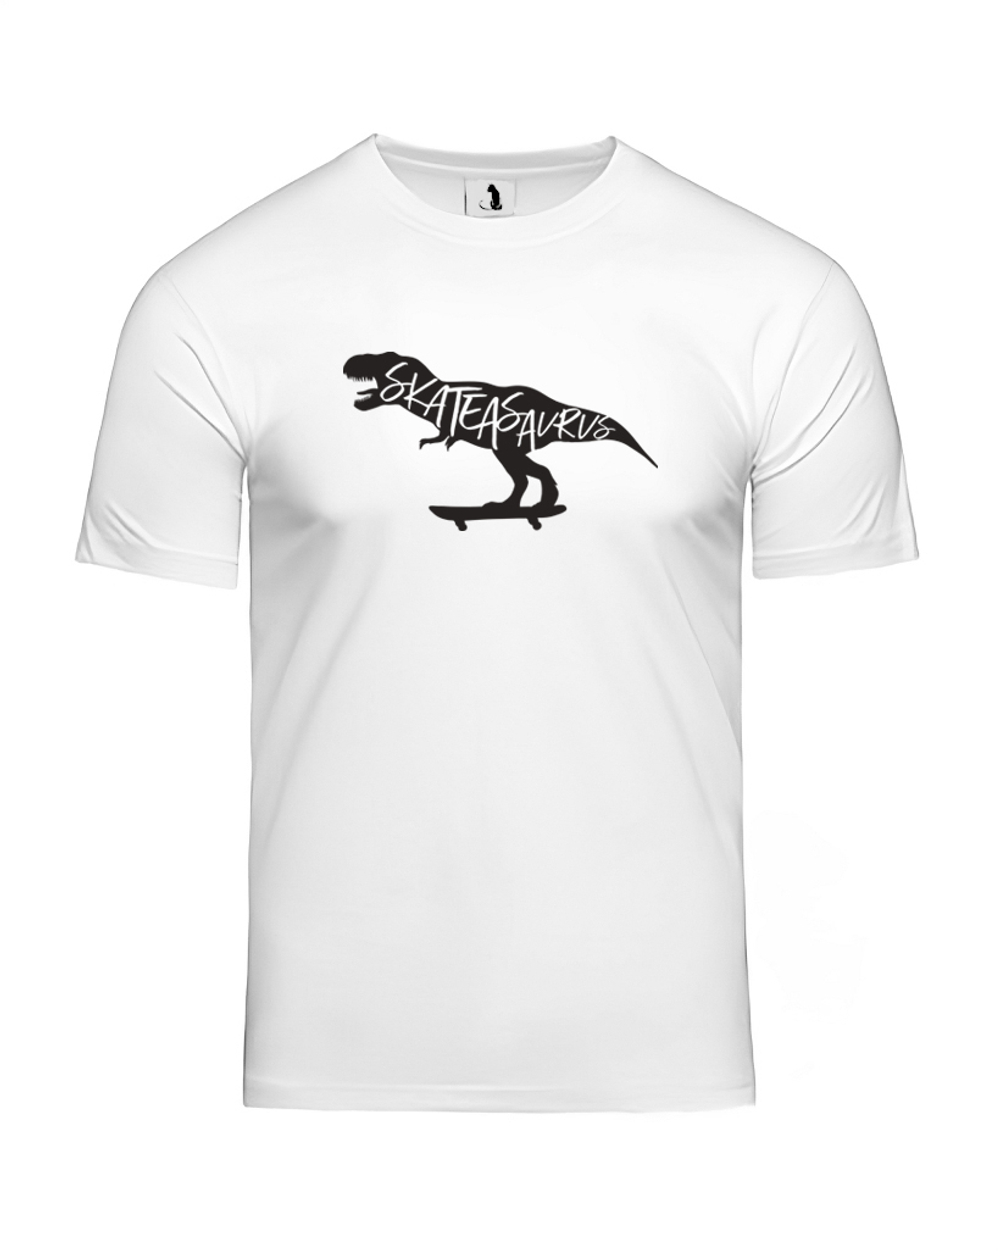 Футболка Skateasaurus unisex белая с черным рисунком